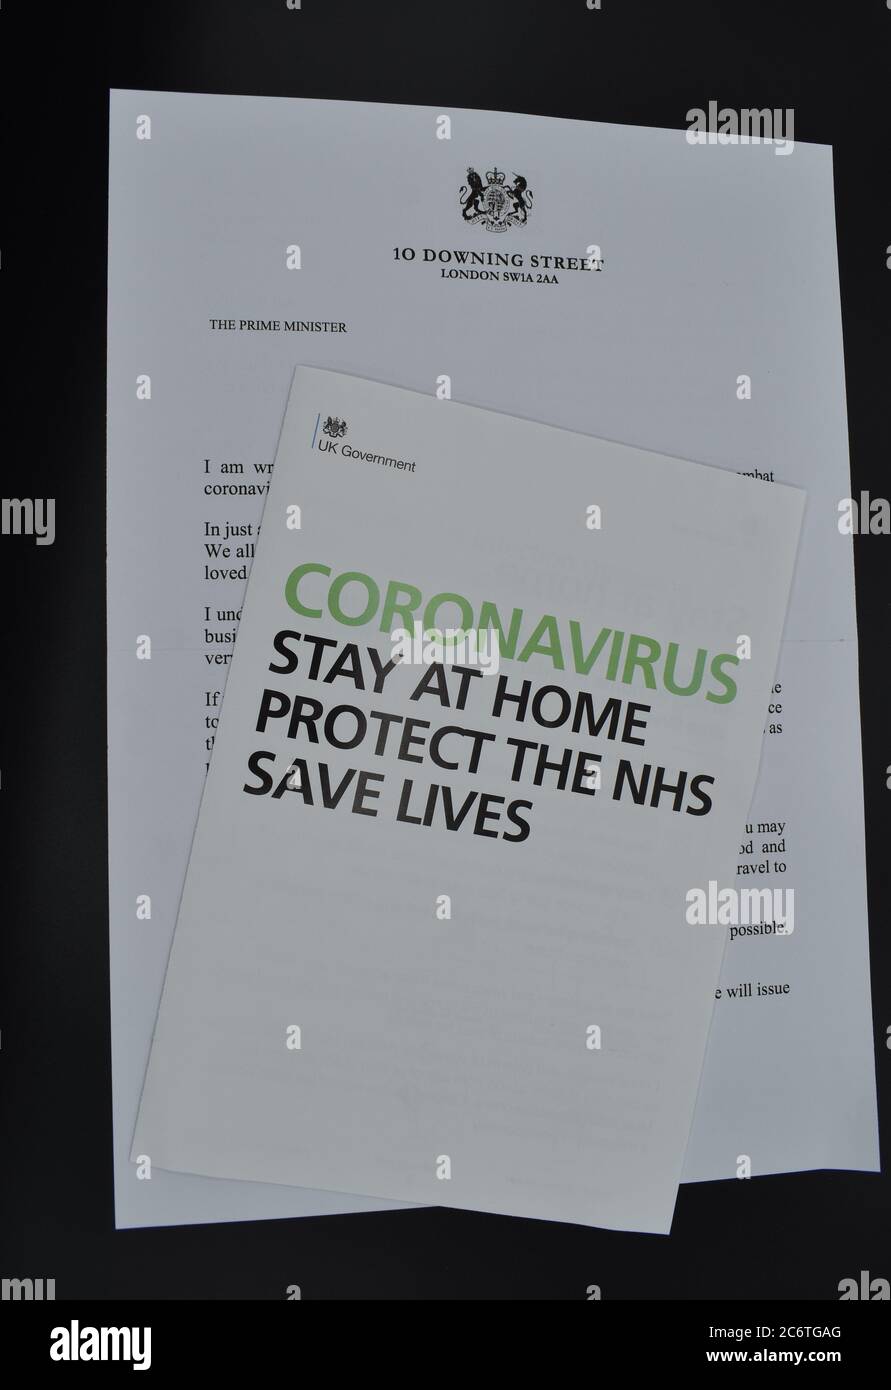 Le dépliant et la lettre du coronavirus du 10 Downing Street ont été distribués dans les foyers du Royaume-Uni au début du confinement de Covid-19. Banque D'Images